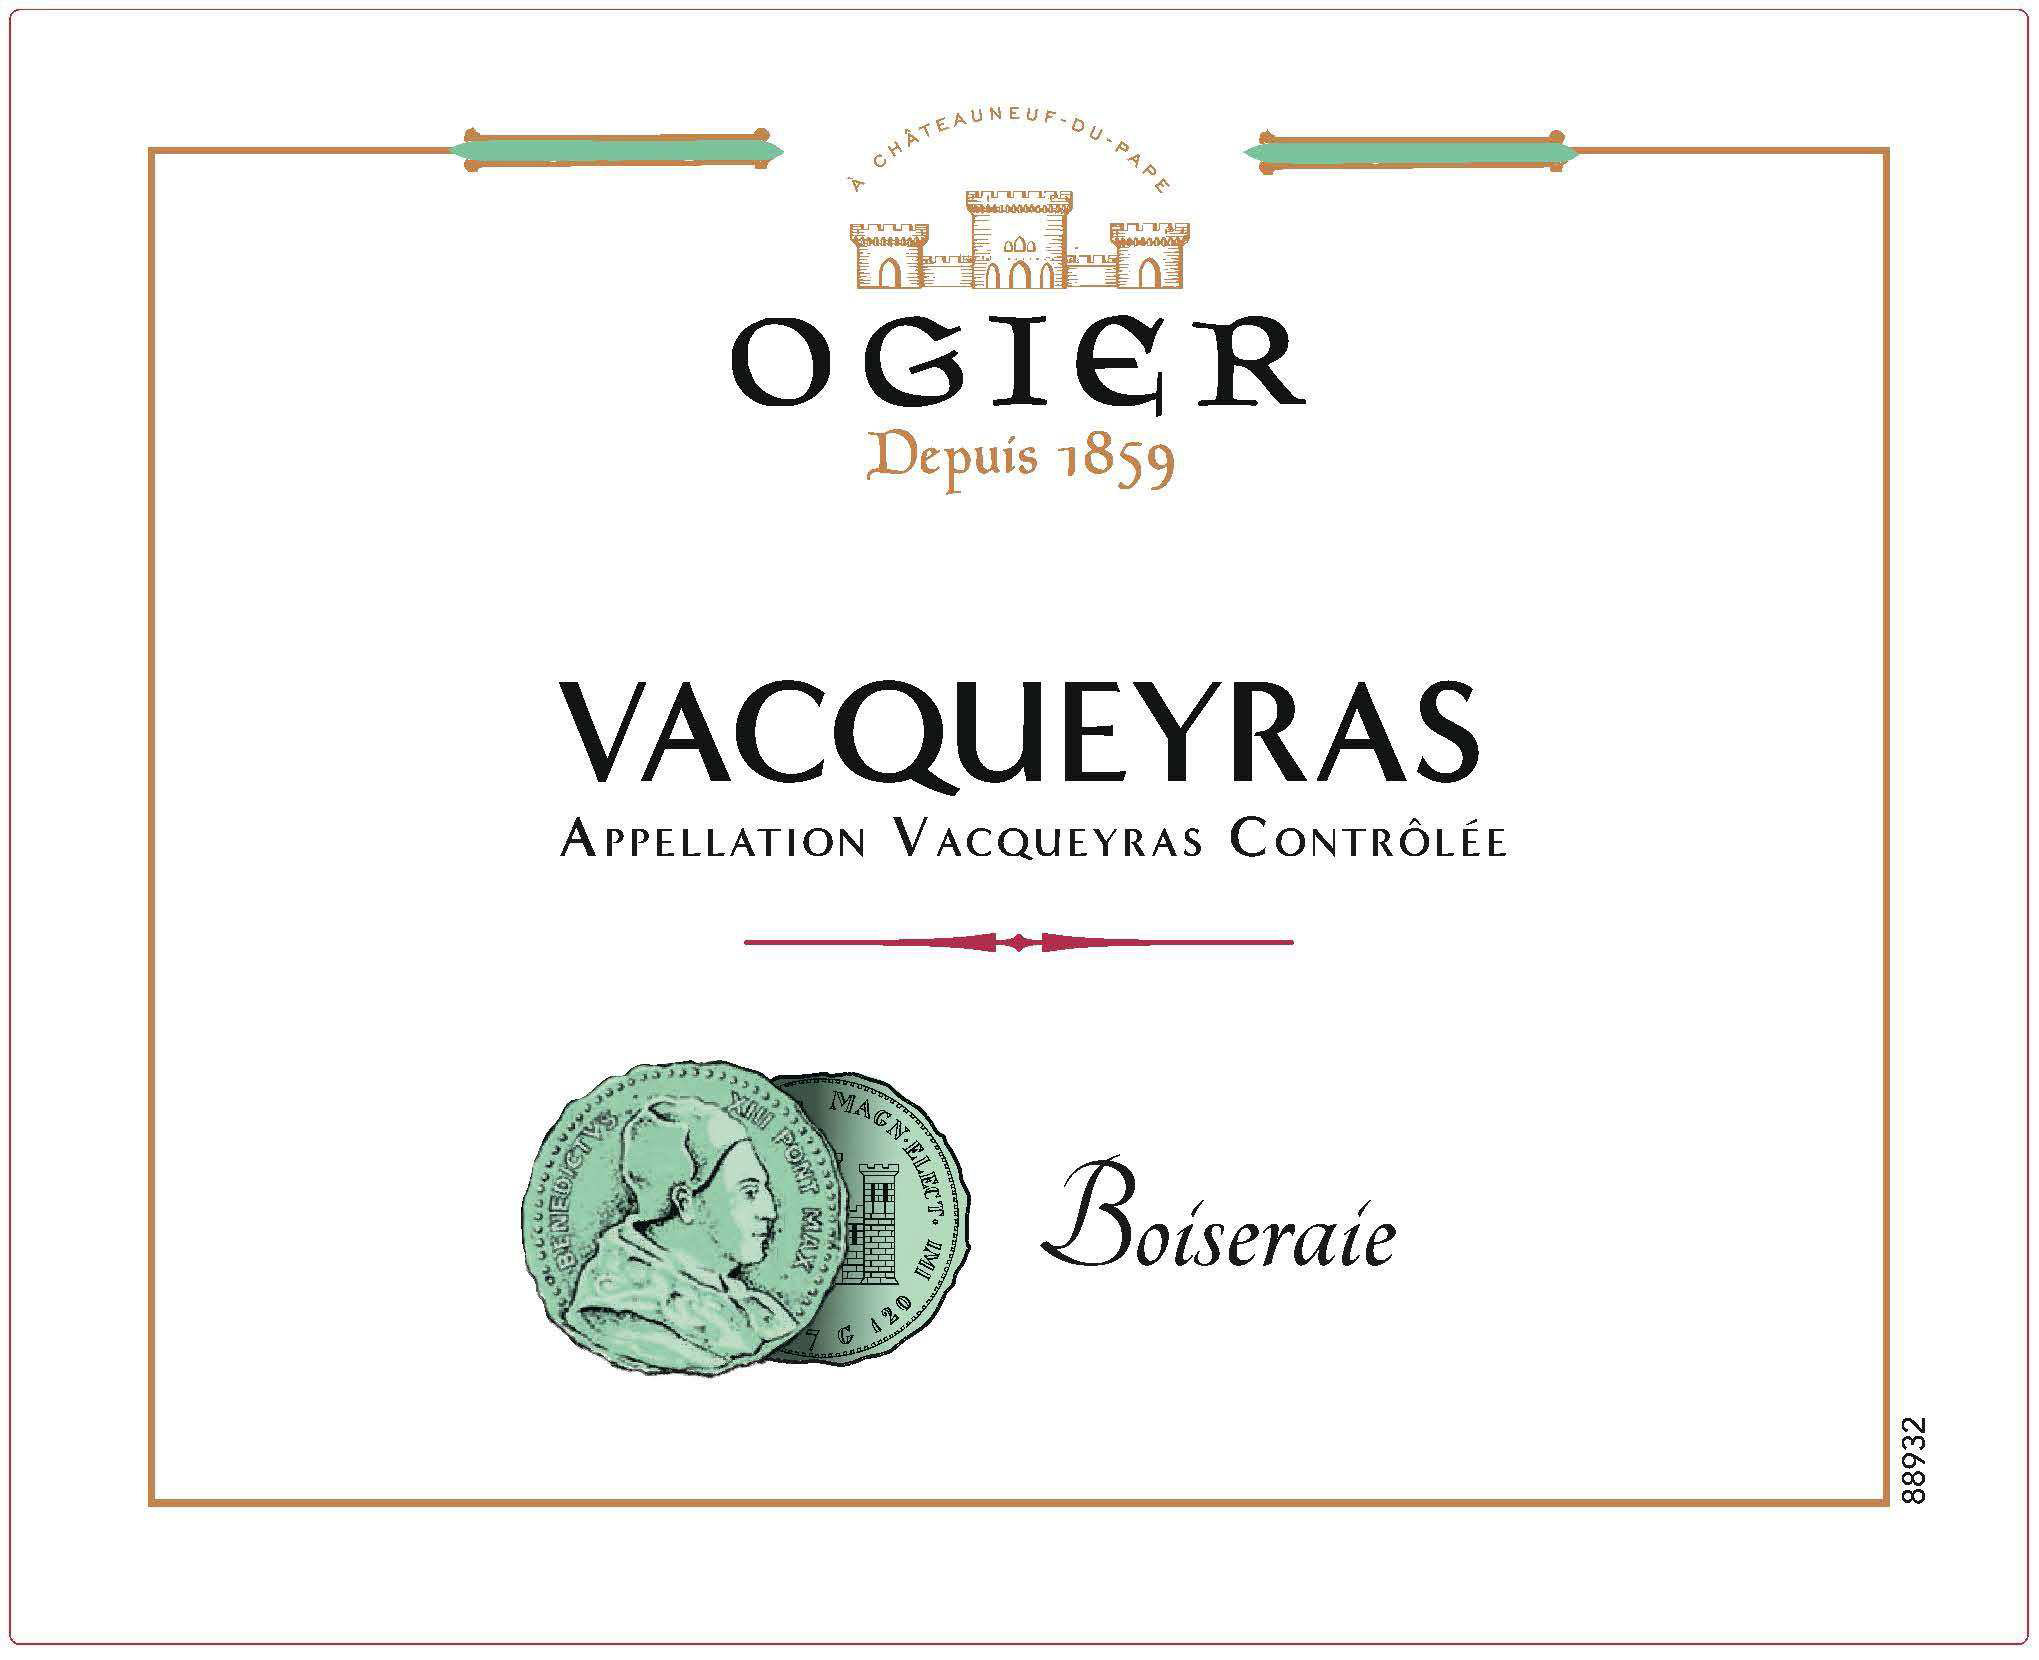 Ogier - Boiseraie - Vacqueyras label